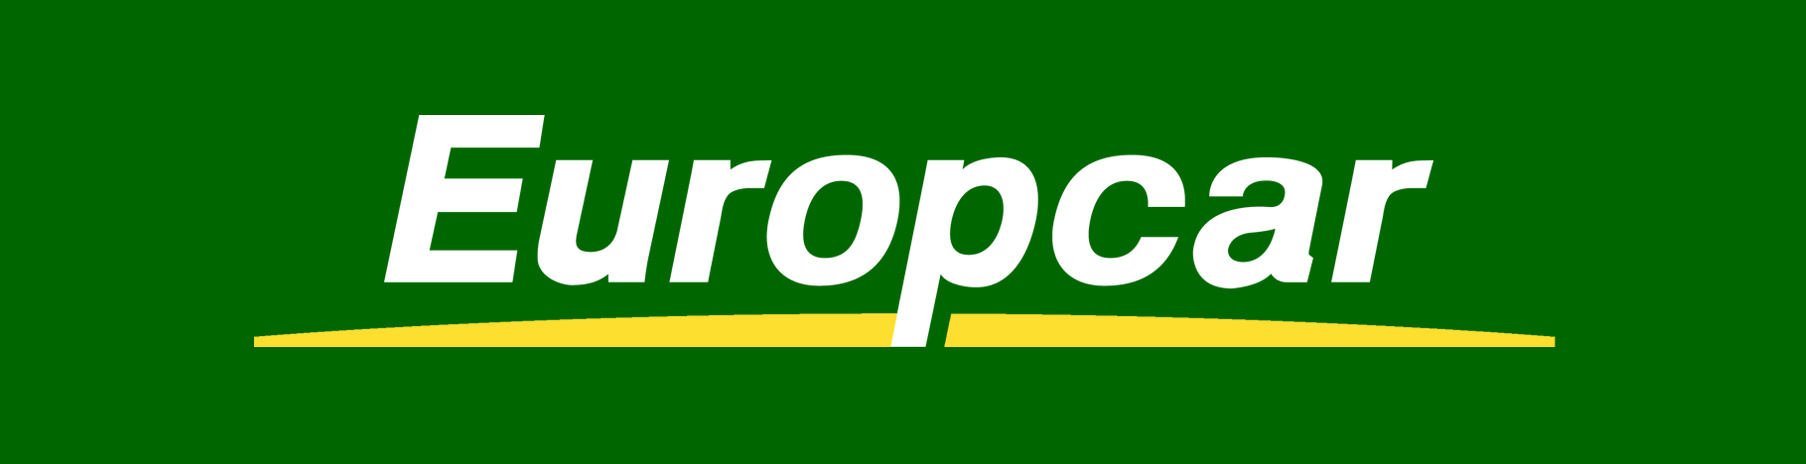 Europcar2